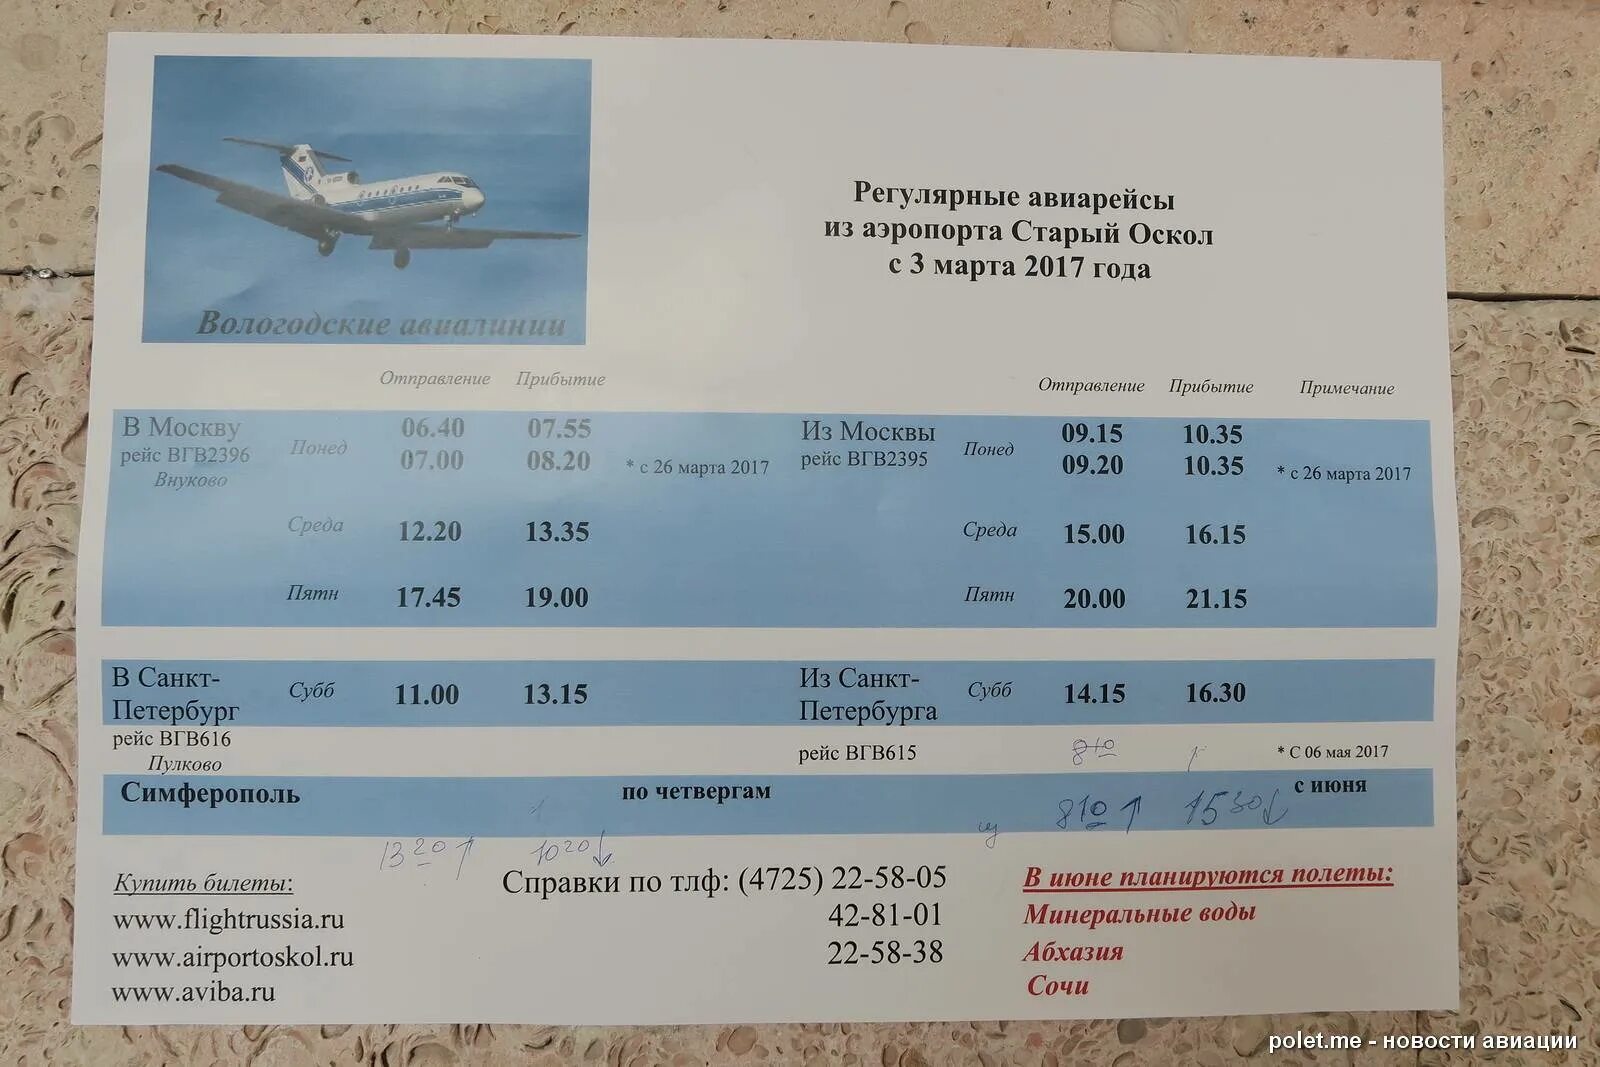 Купить билет на автобус старый оскол москва. Билеты на самолет. Старые билеты на самолет. Аэропорт аэропорт старый Оскол. Расписание авиабилетов.